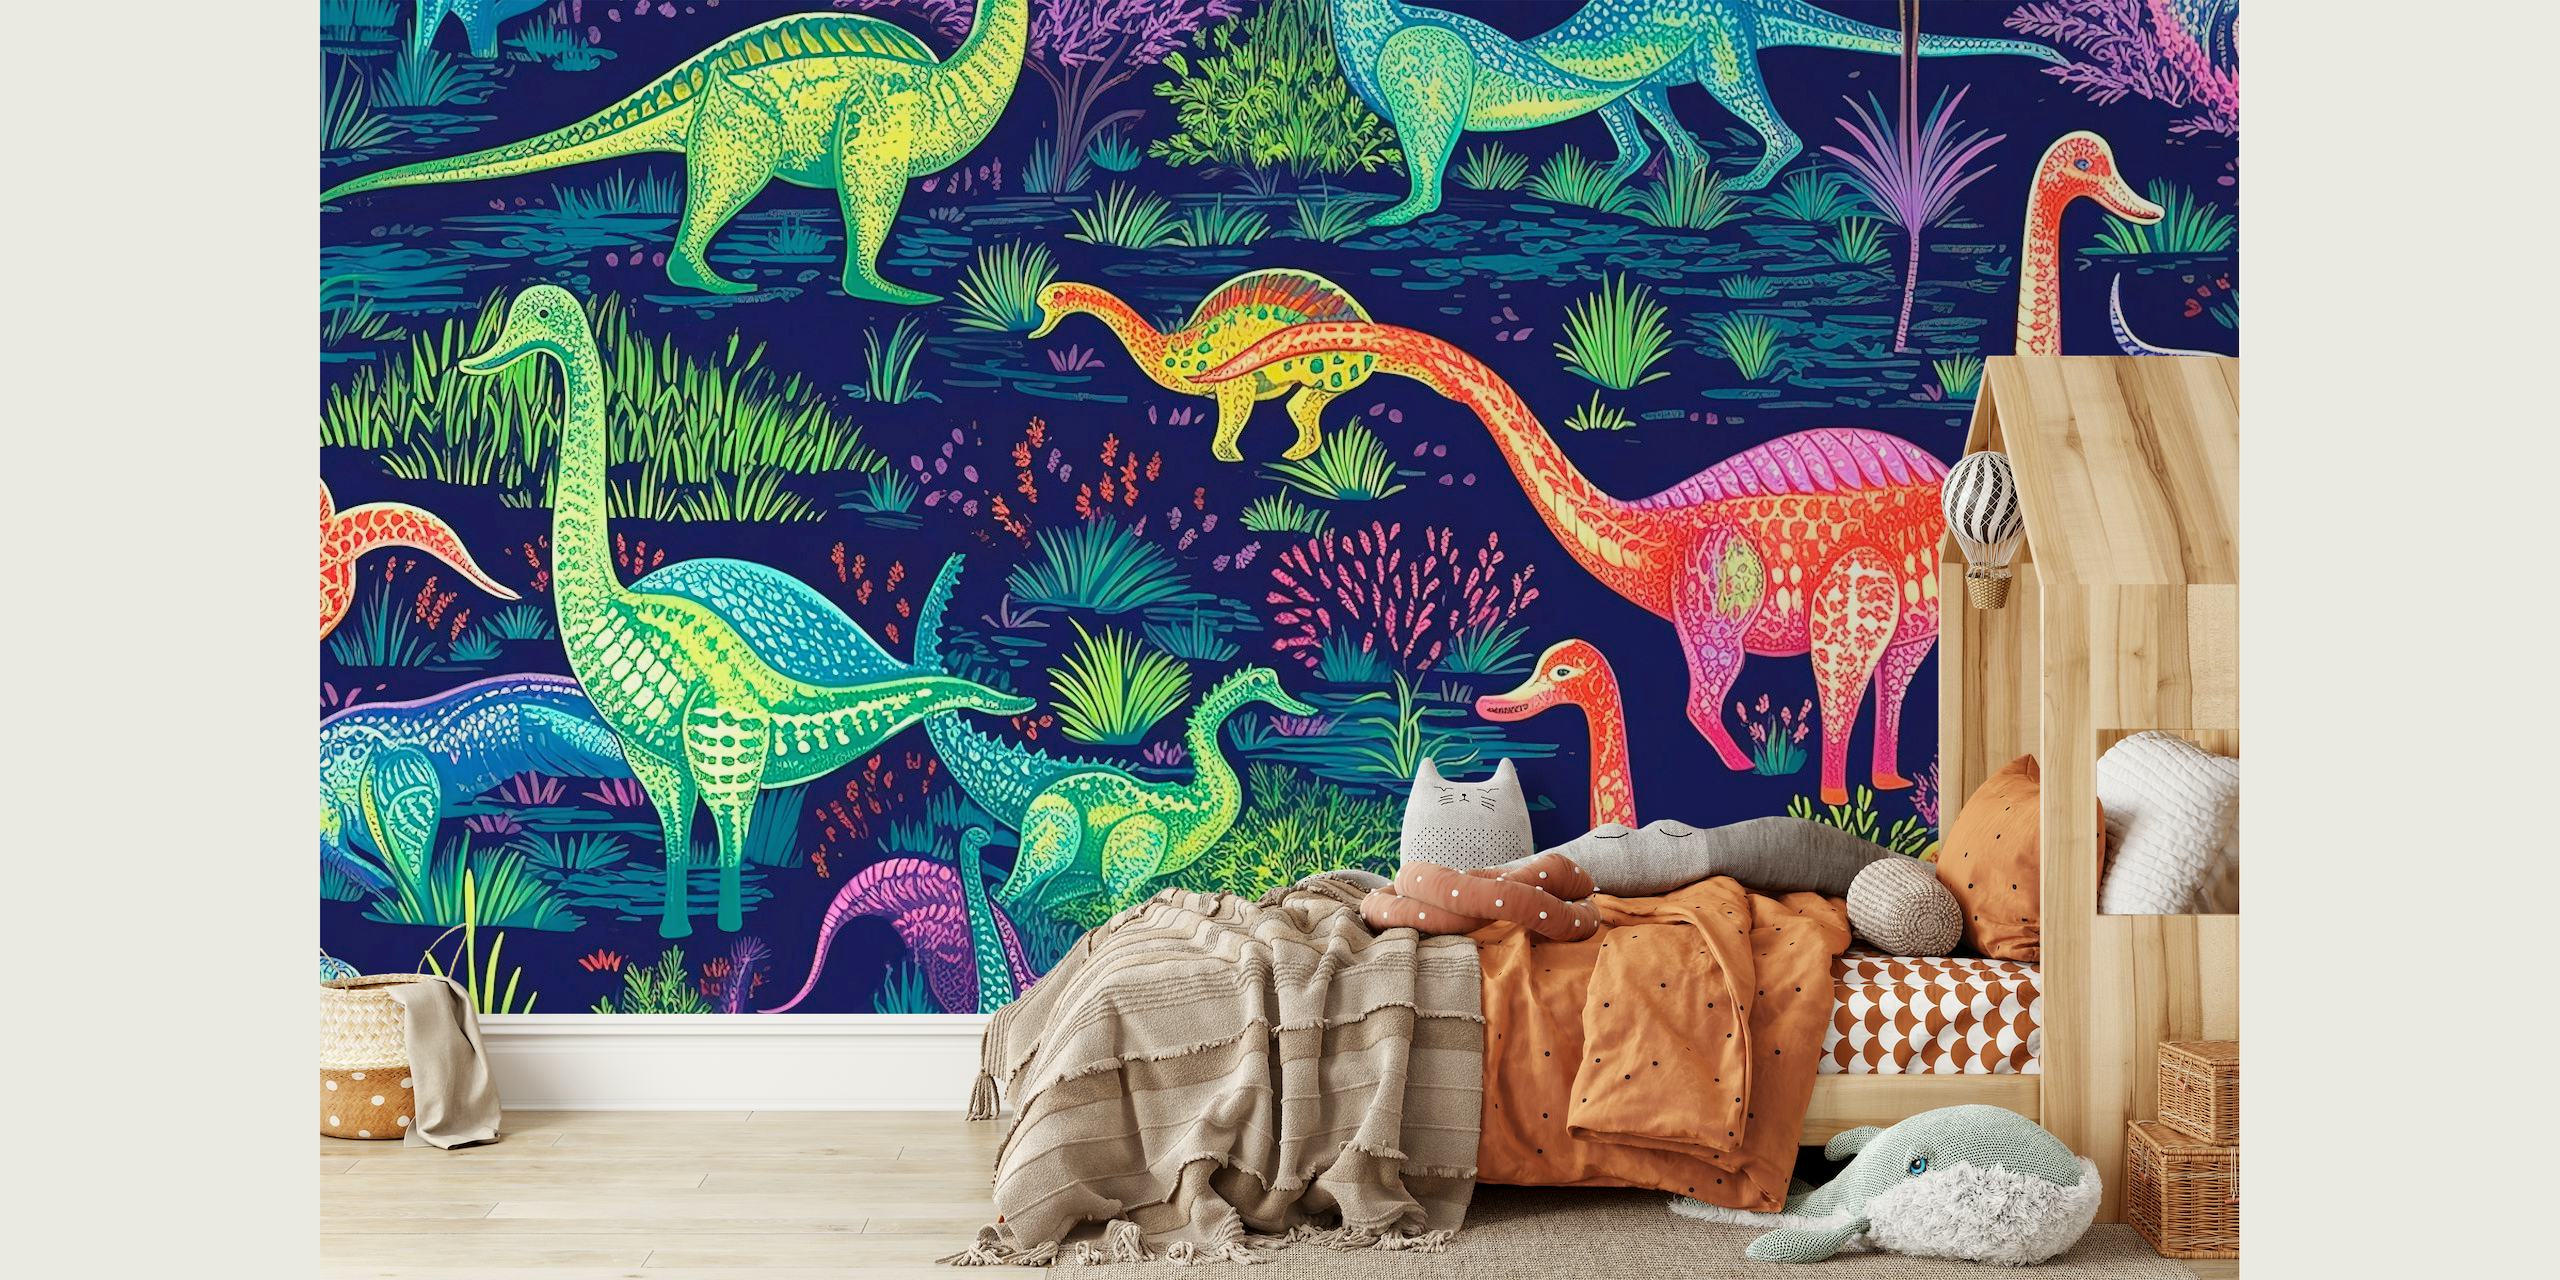 Farverigt vægmaleri med animerede dinosaurer i fluorescerende farver sat mod en forhistorisk baggrund